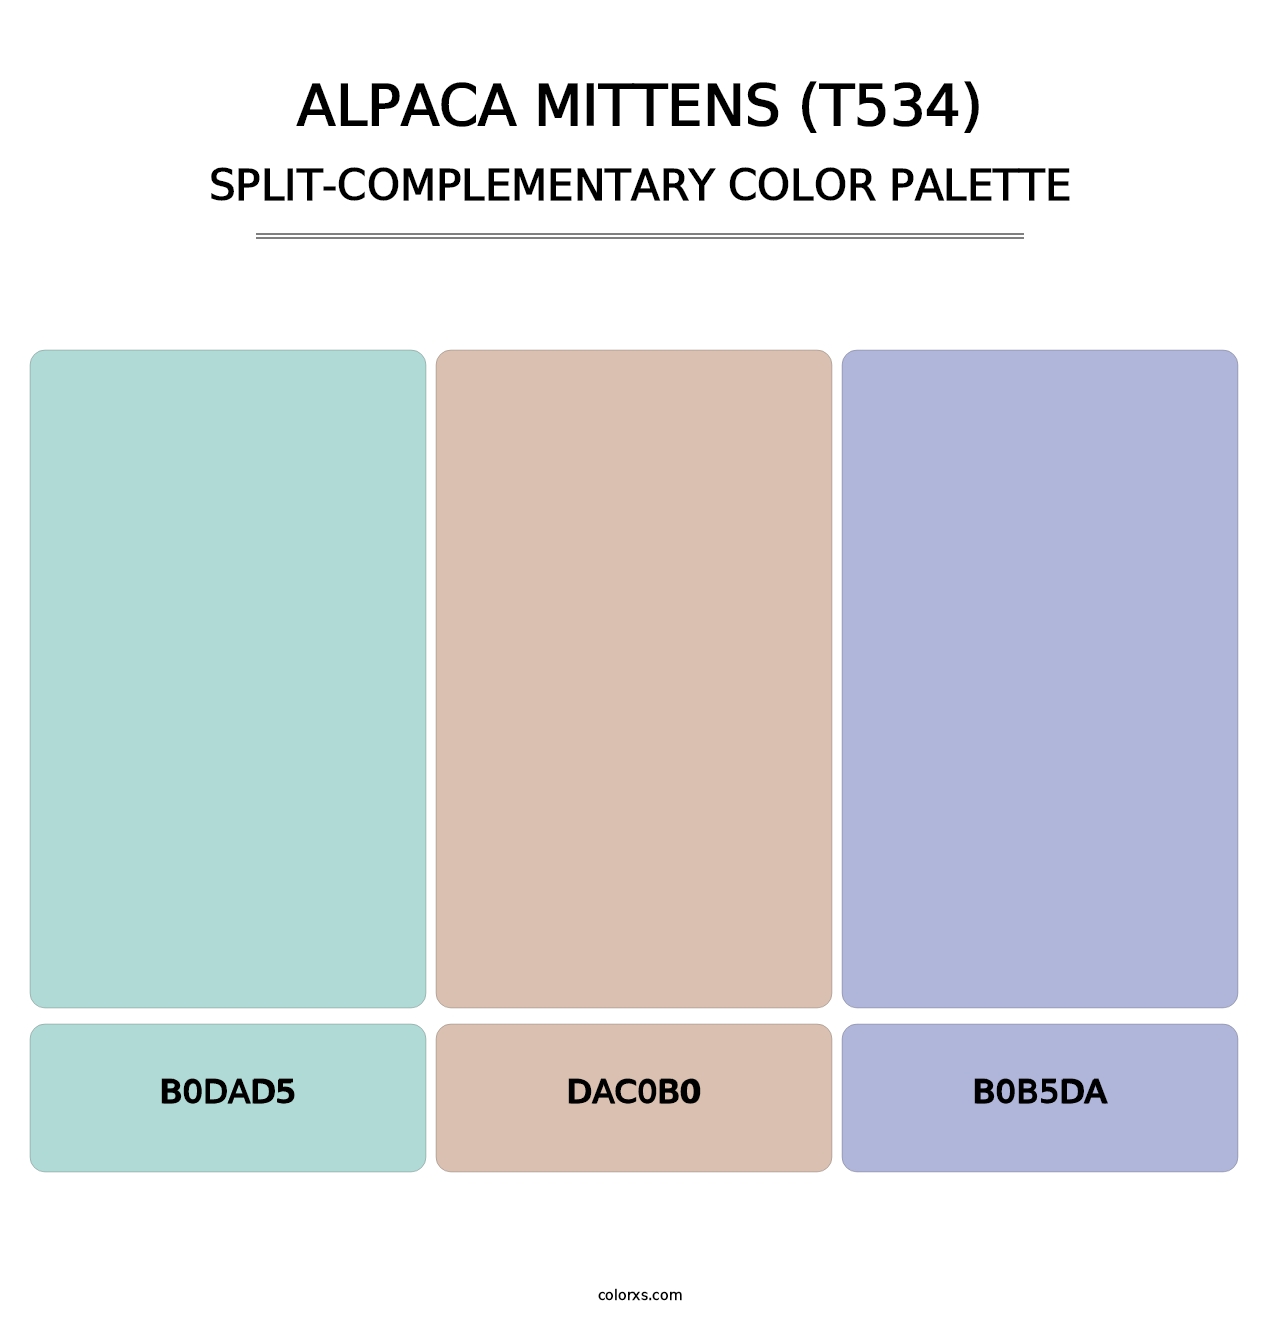 Alpaca Mittens (T534) - Split-Complementary Color Palette